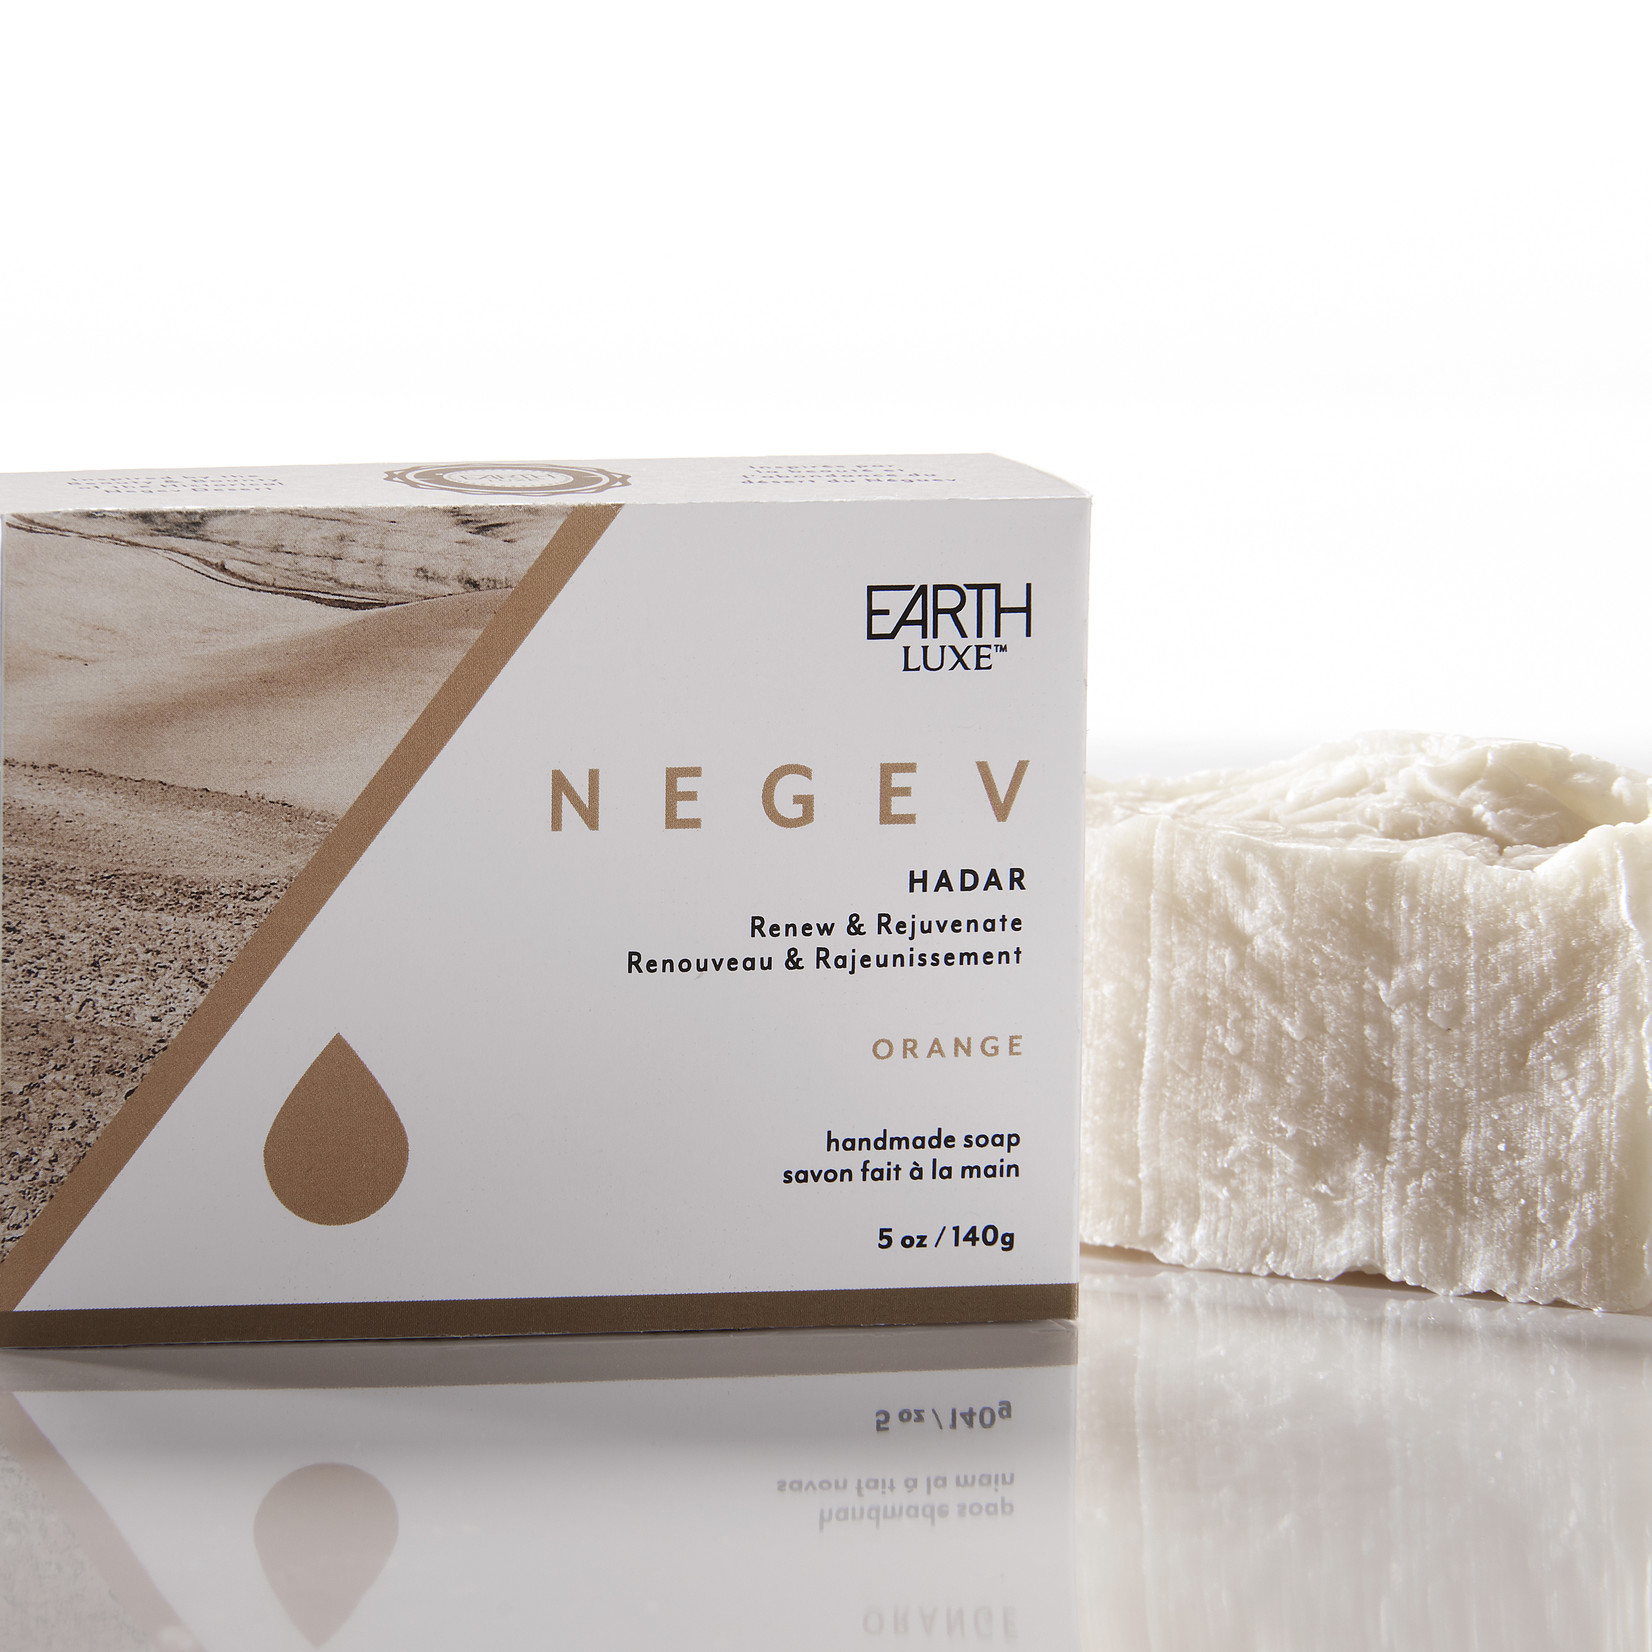 NEGEV: Renew & Rejuvenate (Orange) Soap